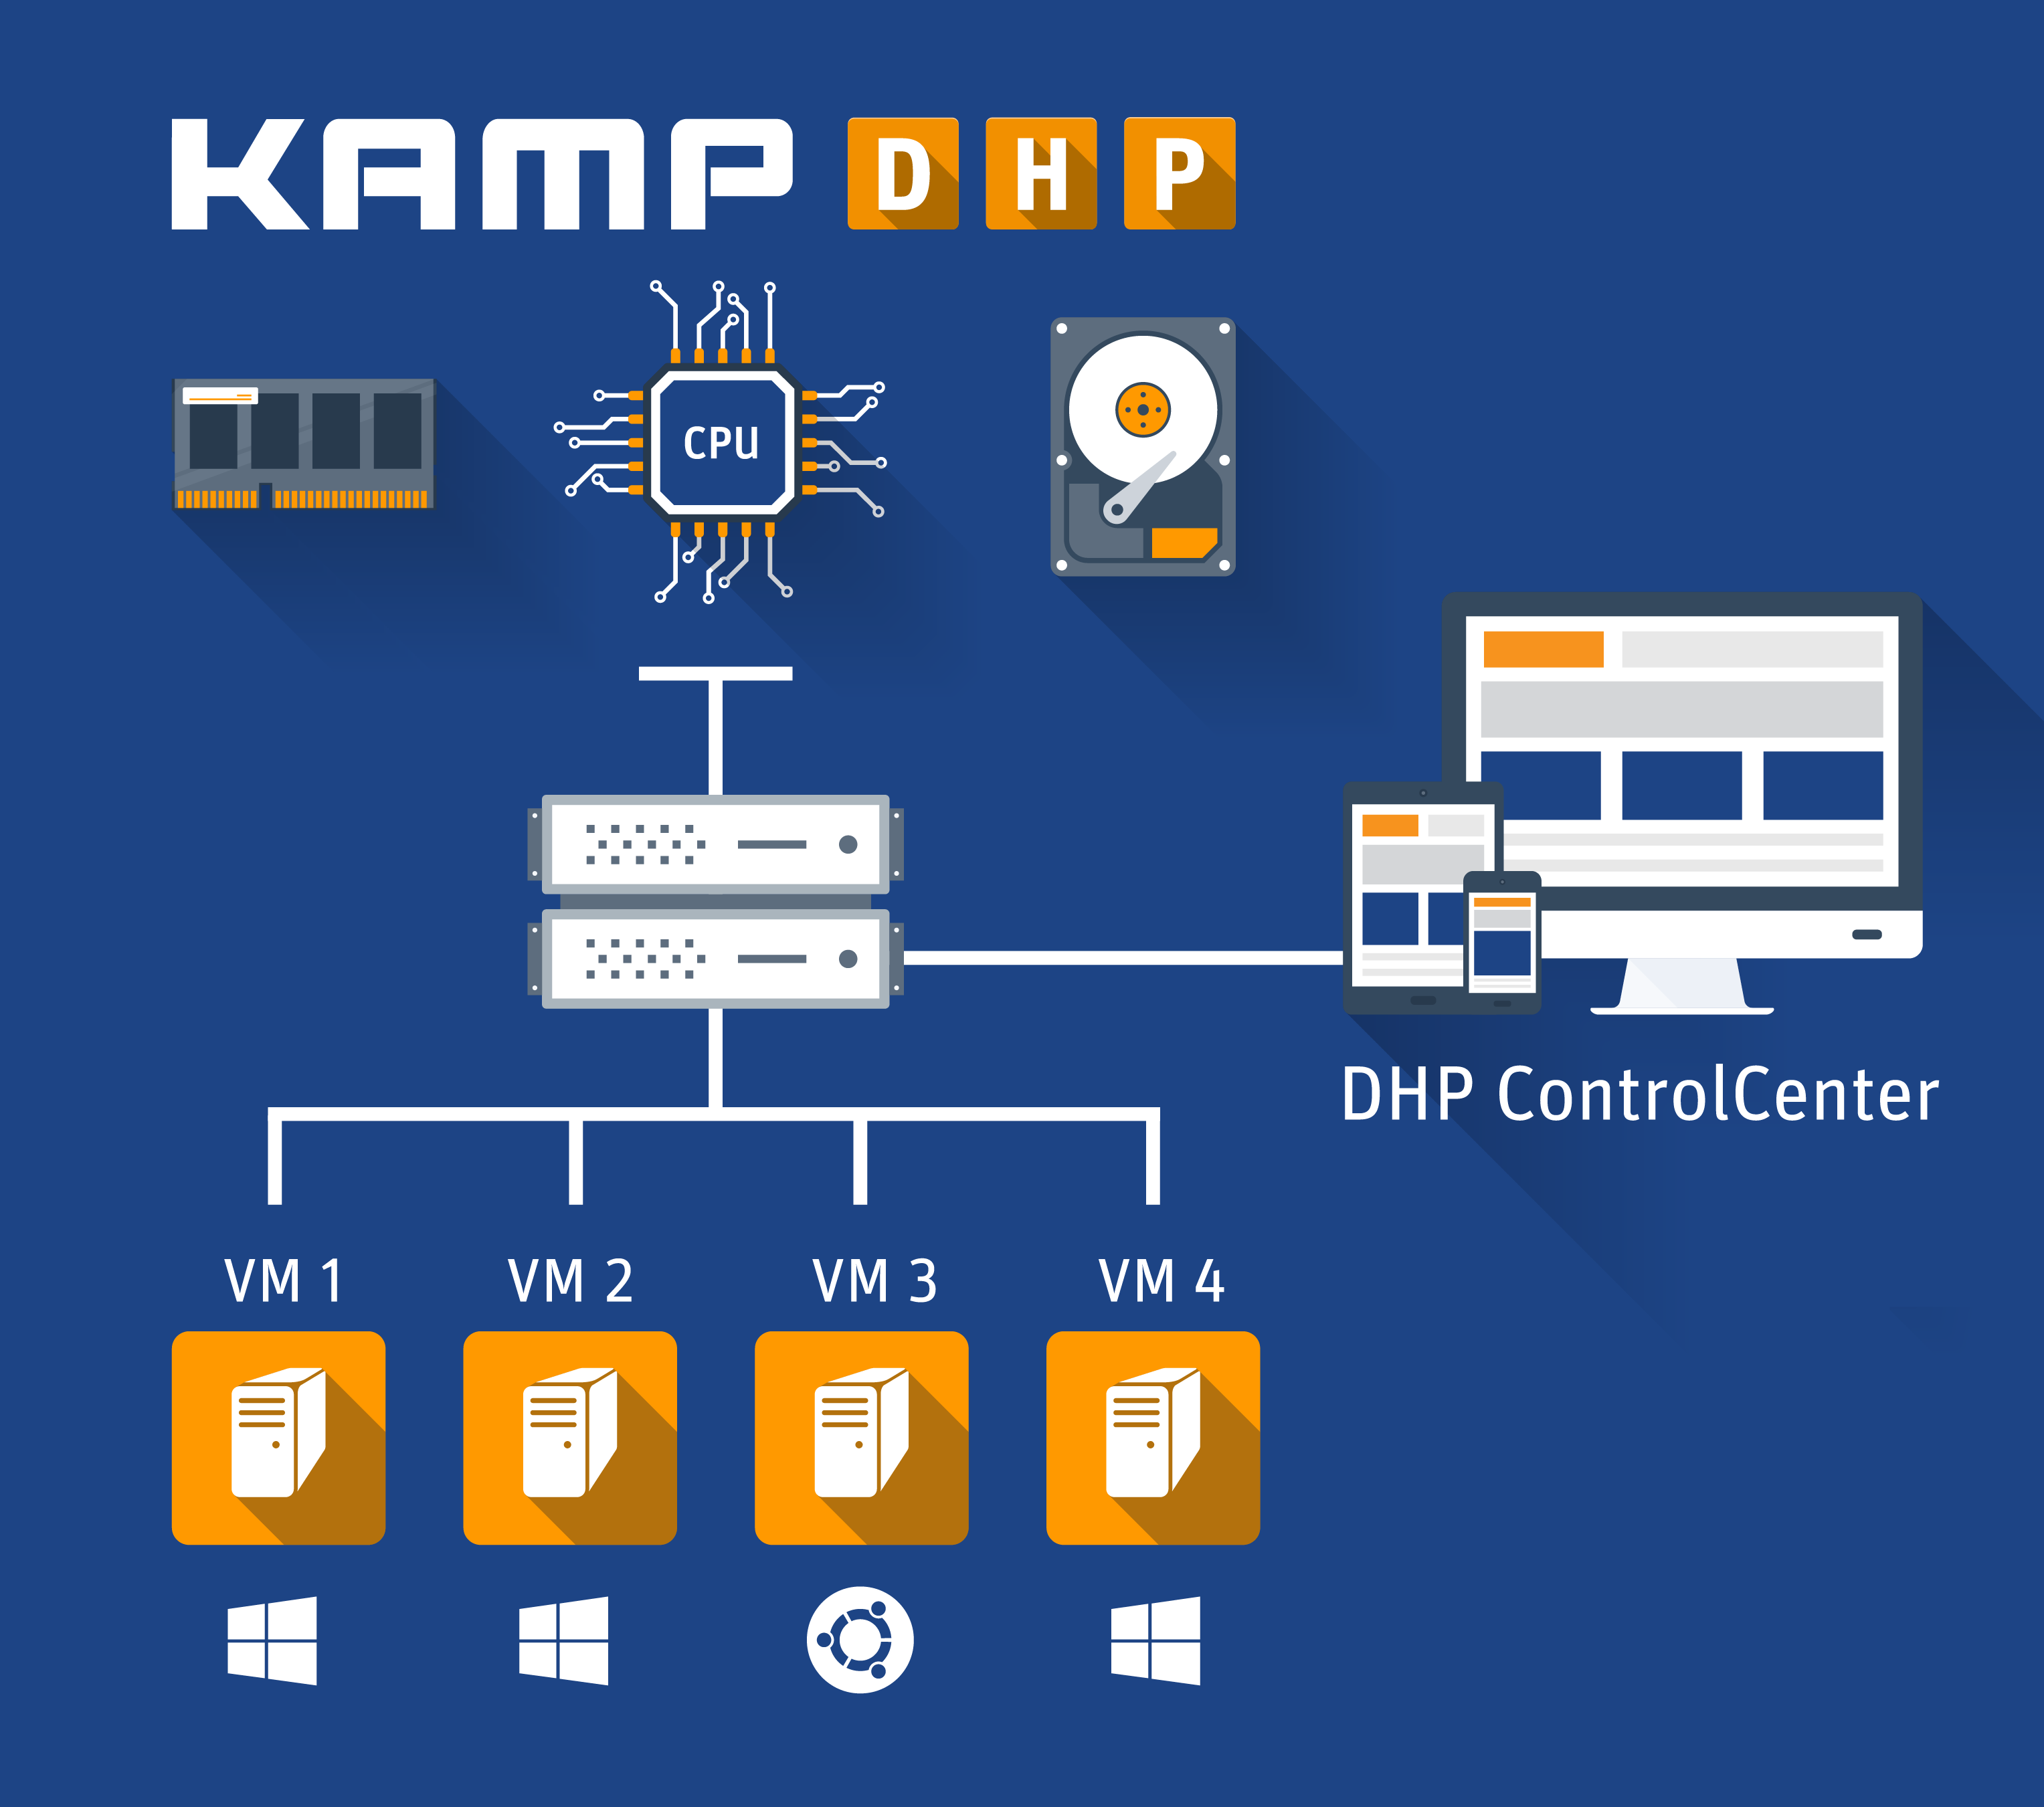 KAMP DHP Visual